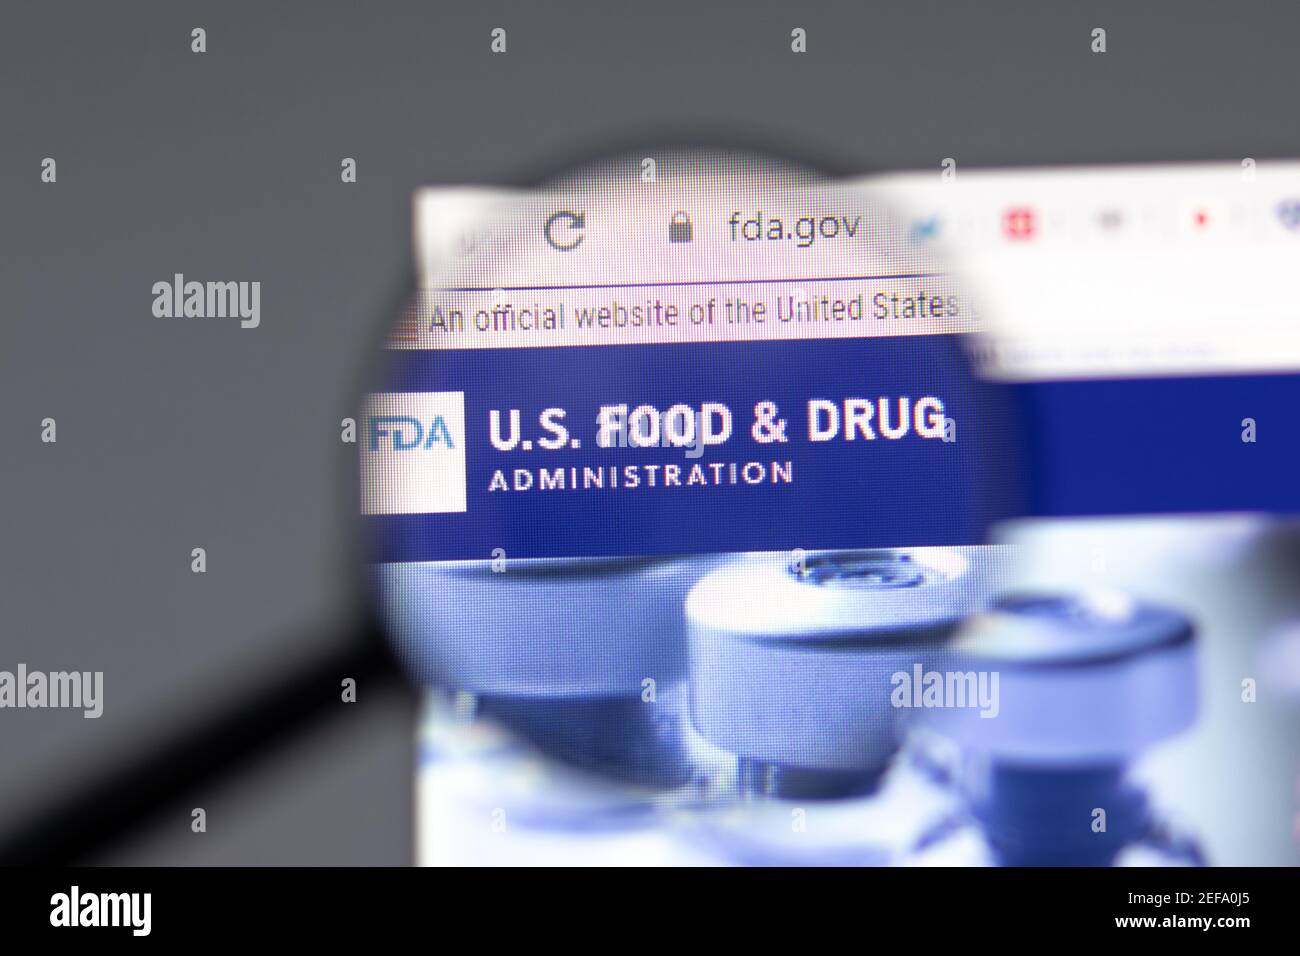 New York, USA - 15 Febbraio 2021: FDA US Food and Drug sito in browser con logo aziendale, editoriale illustrativo Foto Stock